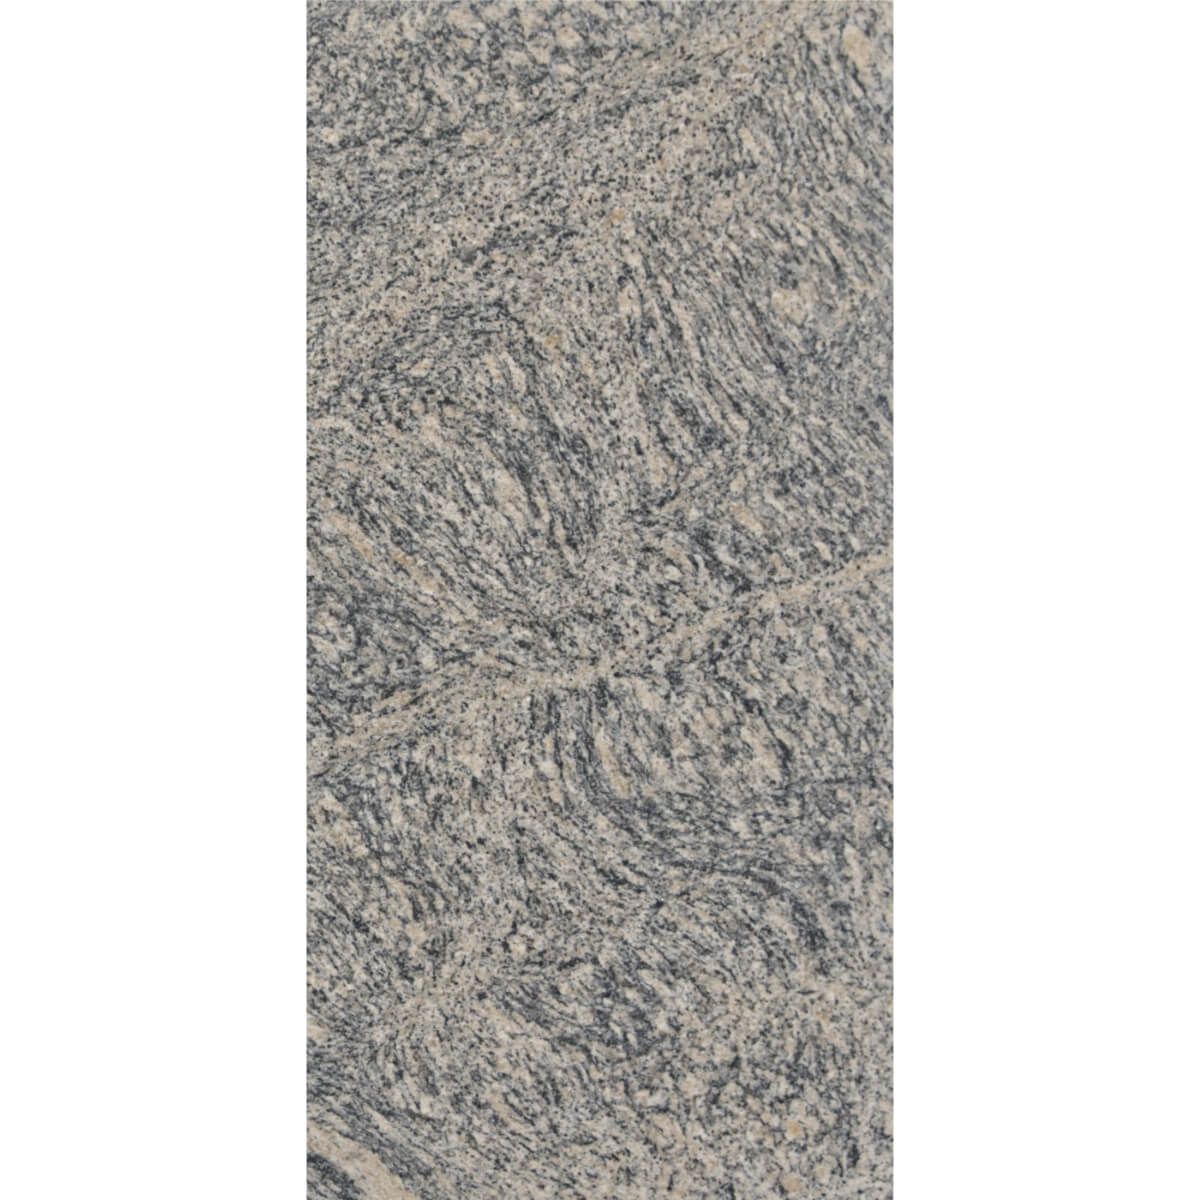 Płytki Granit Tiger Skin polerowany 61x30,5x1 cm    